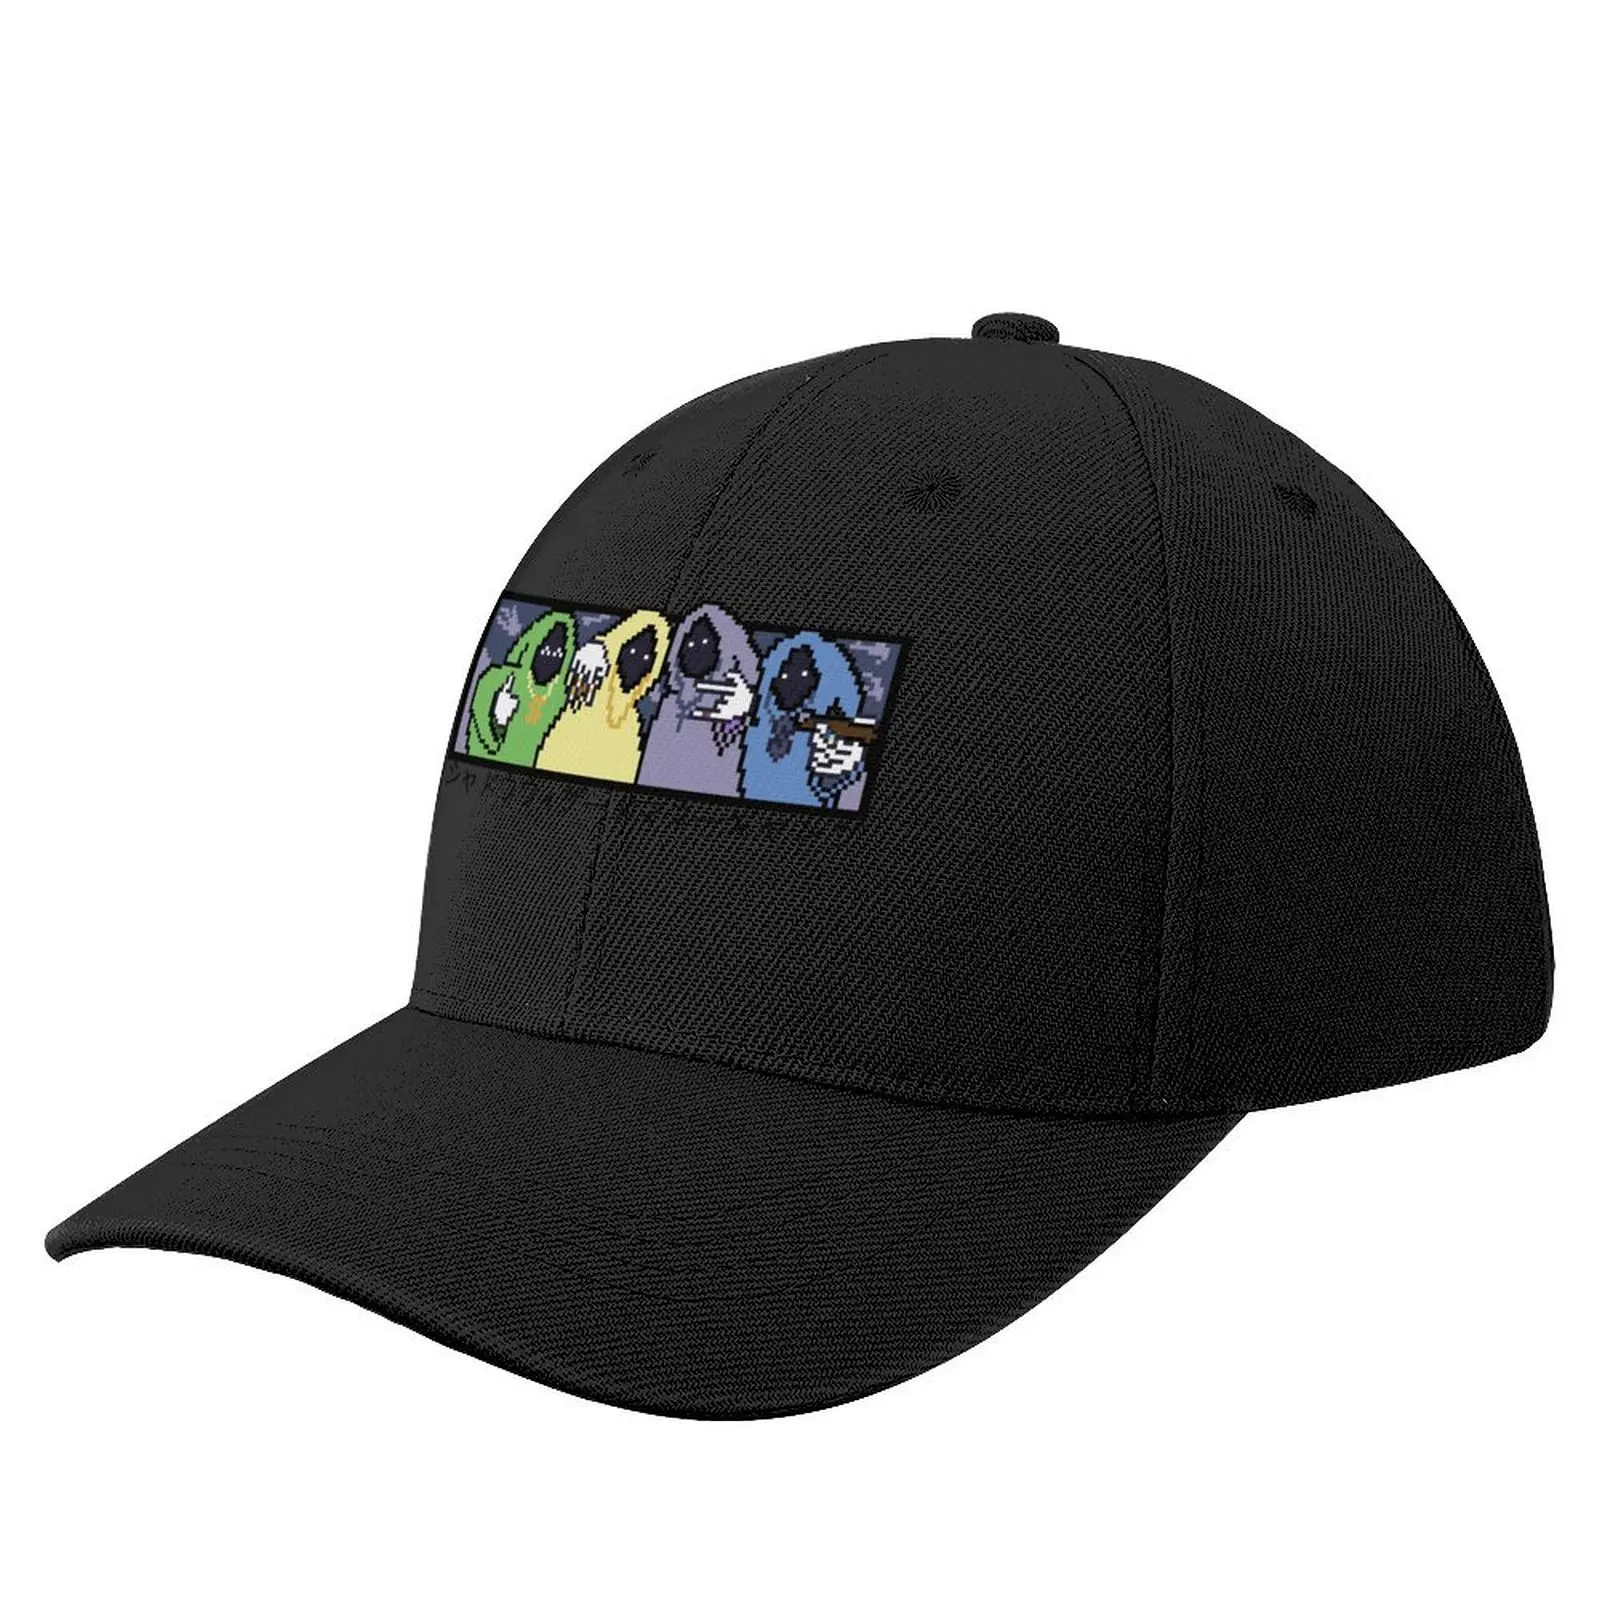 

SHADOW WIZARD MONEY GANG Pixel Art Baseball Cap Trucker Cap Golf Cap Hats For Men Women's